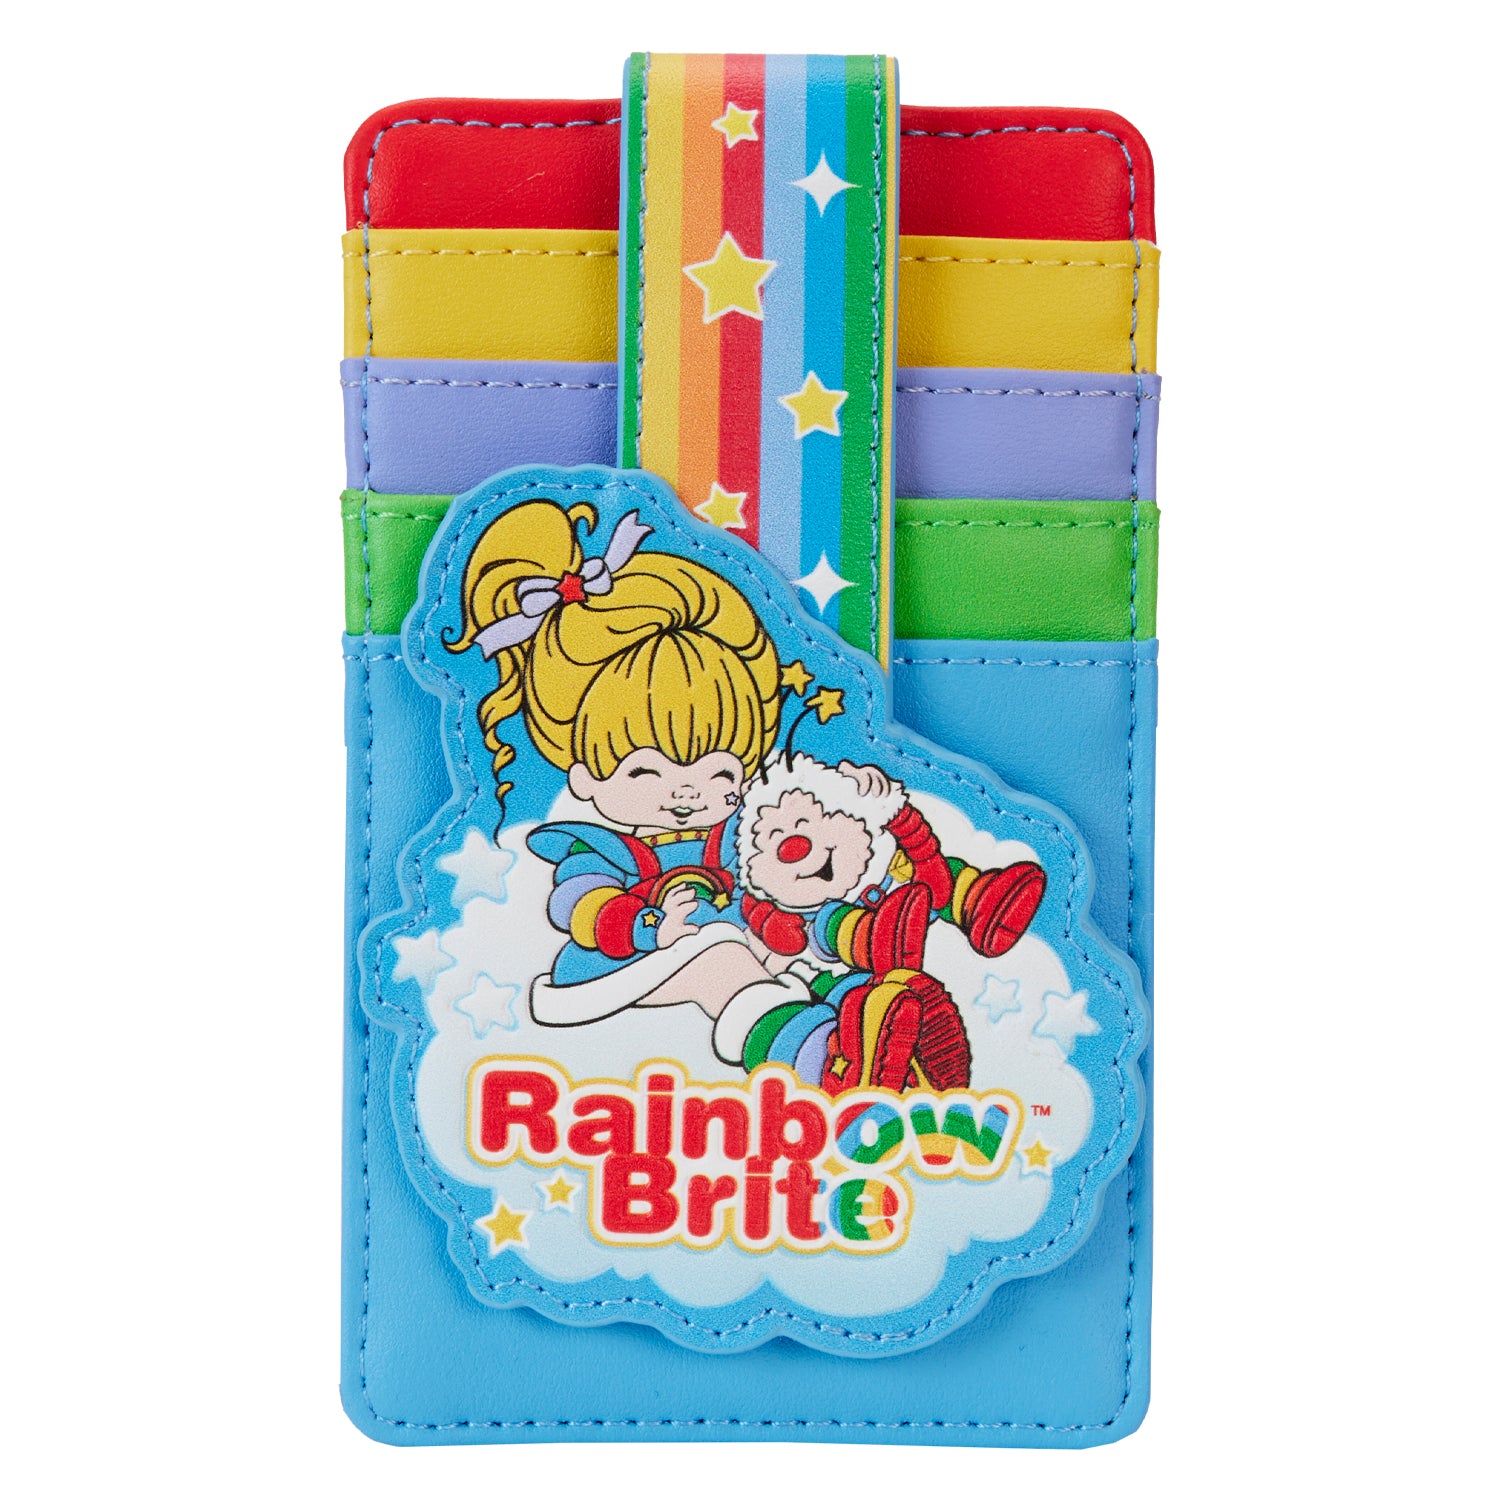 Hallmark | Rainbow Brite Cloud Card Holder Wallet